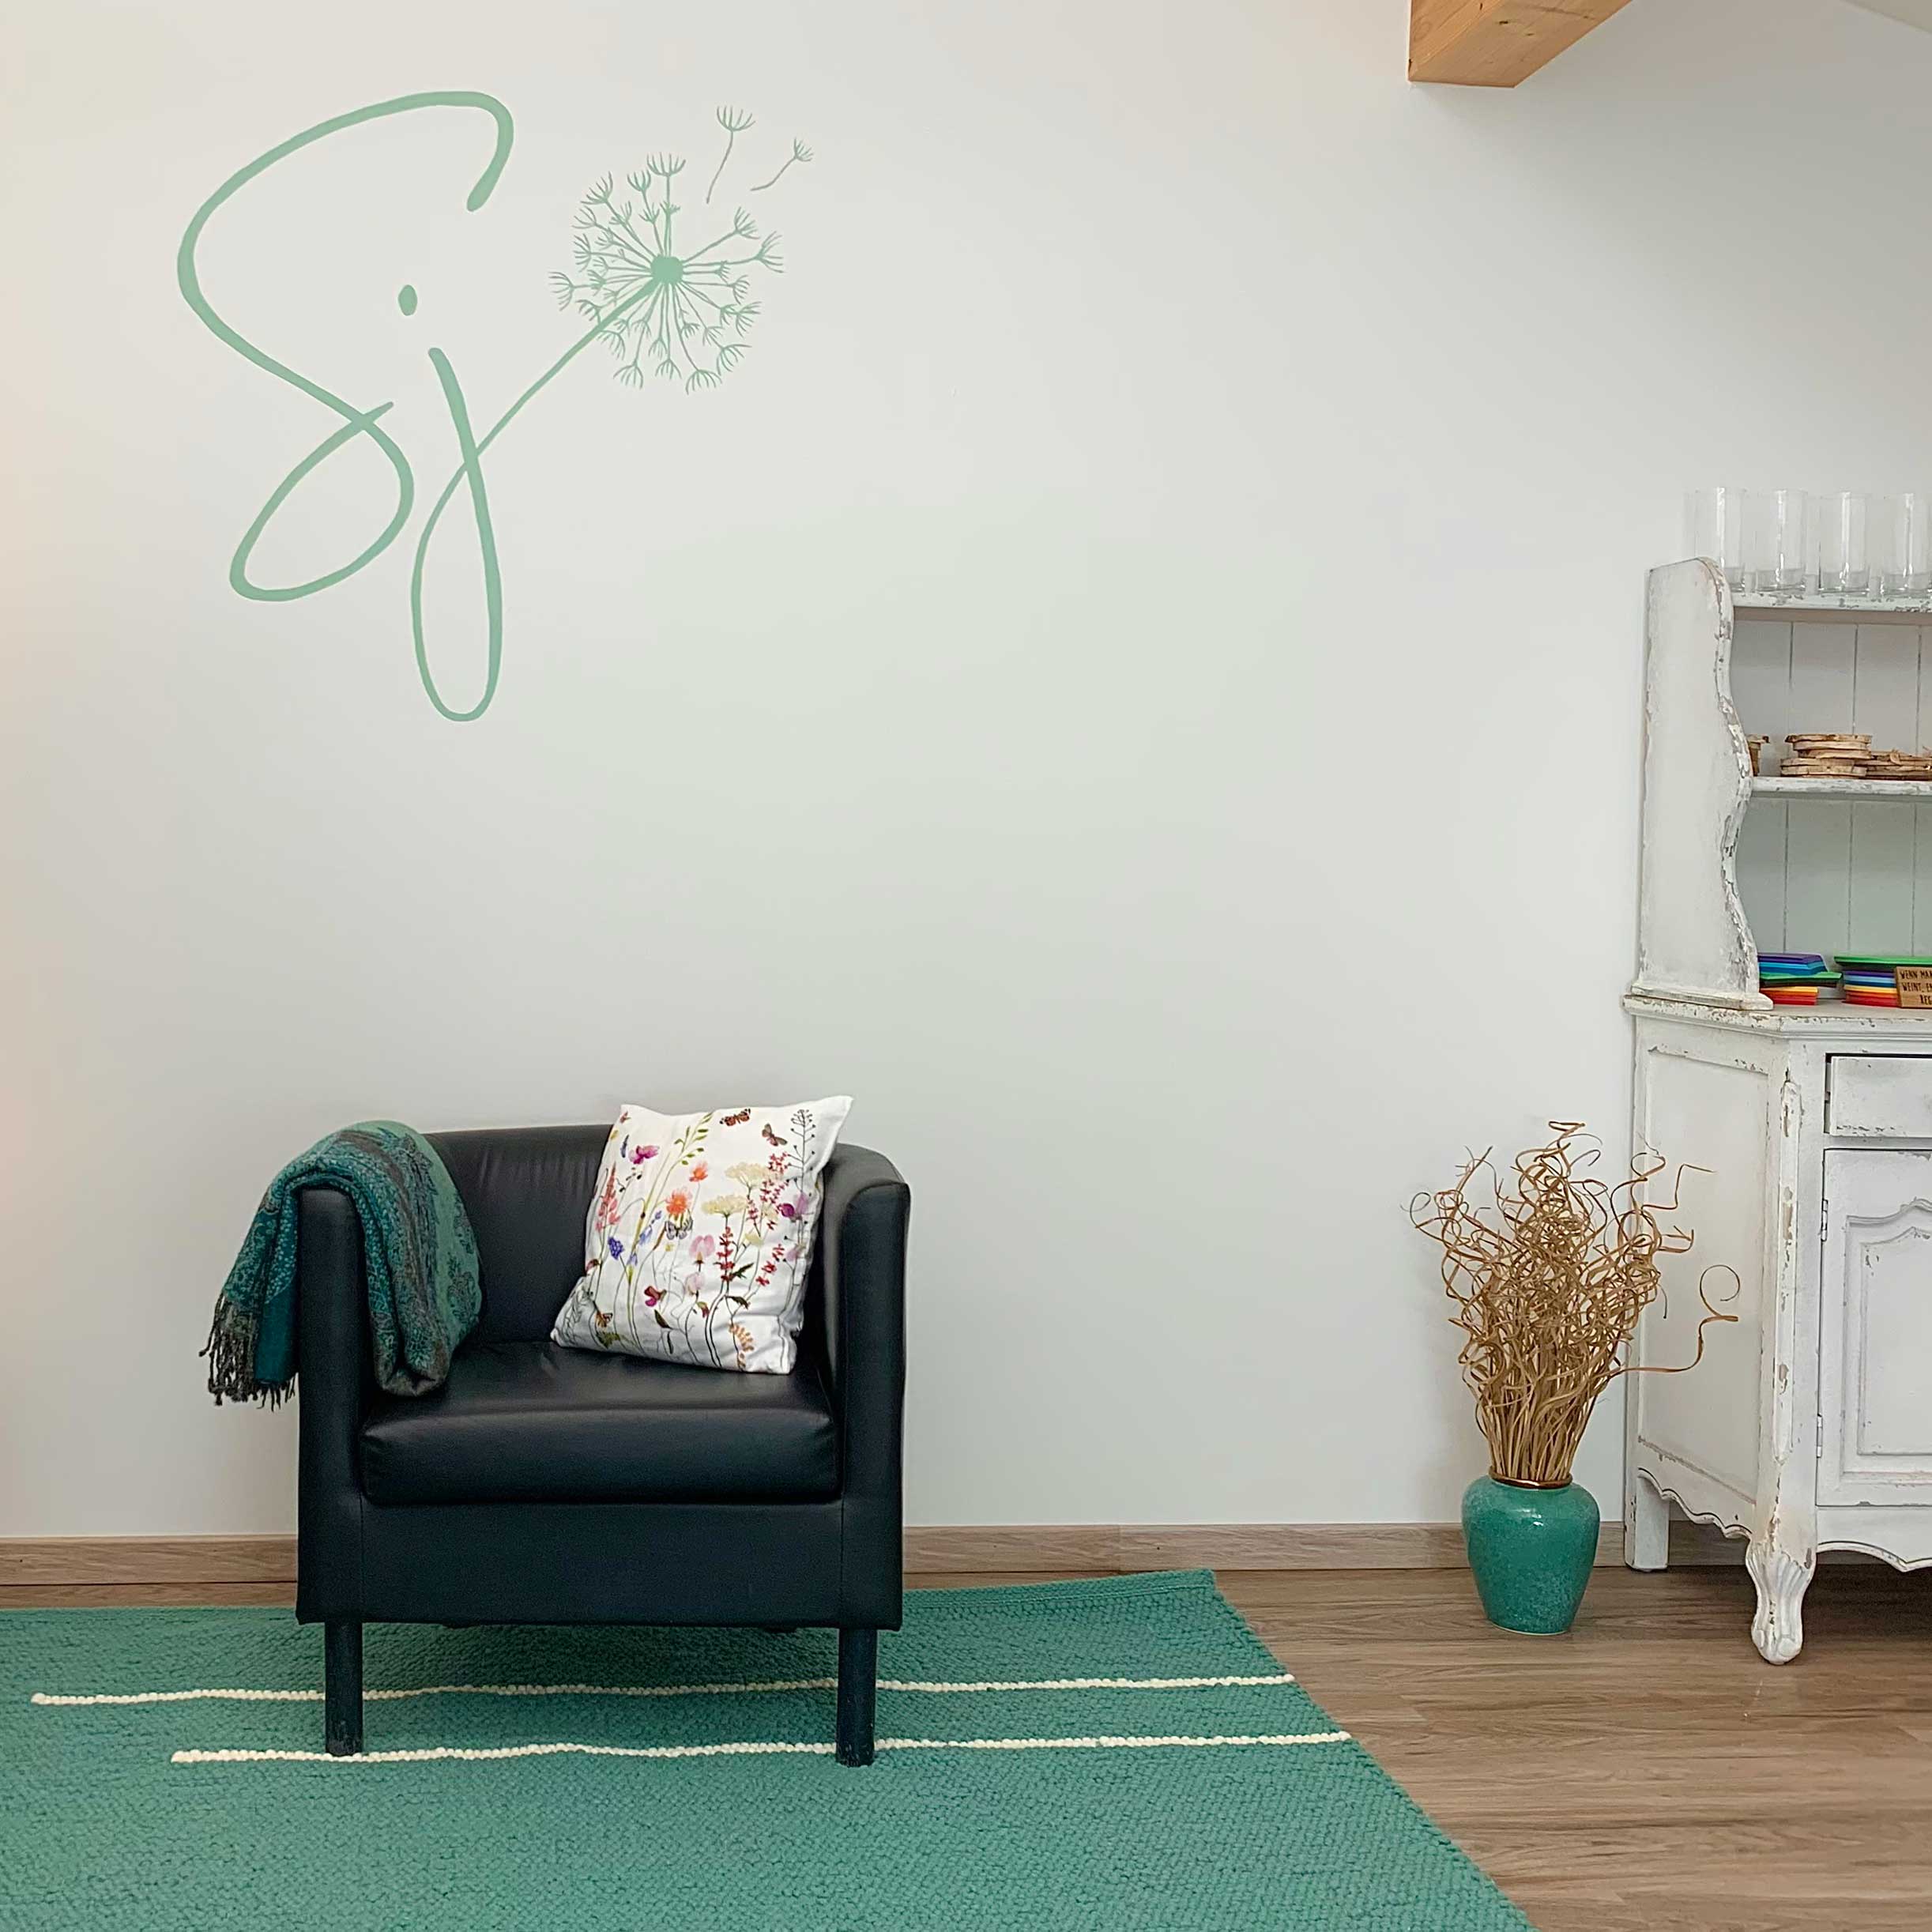 grünes Logo SJ mit Pusteblume an der Wand über Polstersessel mit Decke über der lehne und weißem Polster mit Wiesenblumen, rechst davon am Boden grüne Vase mit zarten Kästchen und Teil einer weißen Kommode mit Gläsern, Holzscheiben und buntem Papier